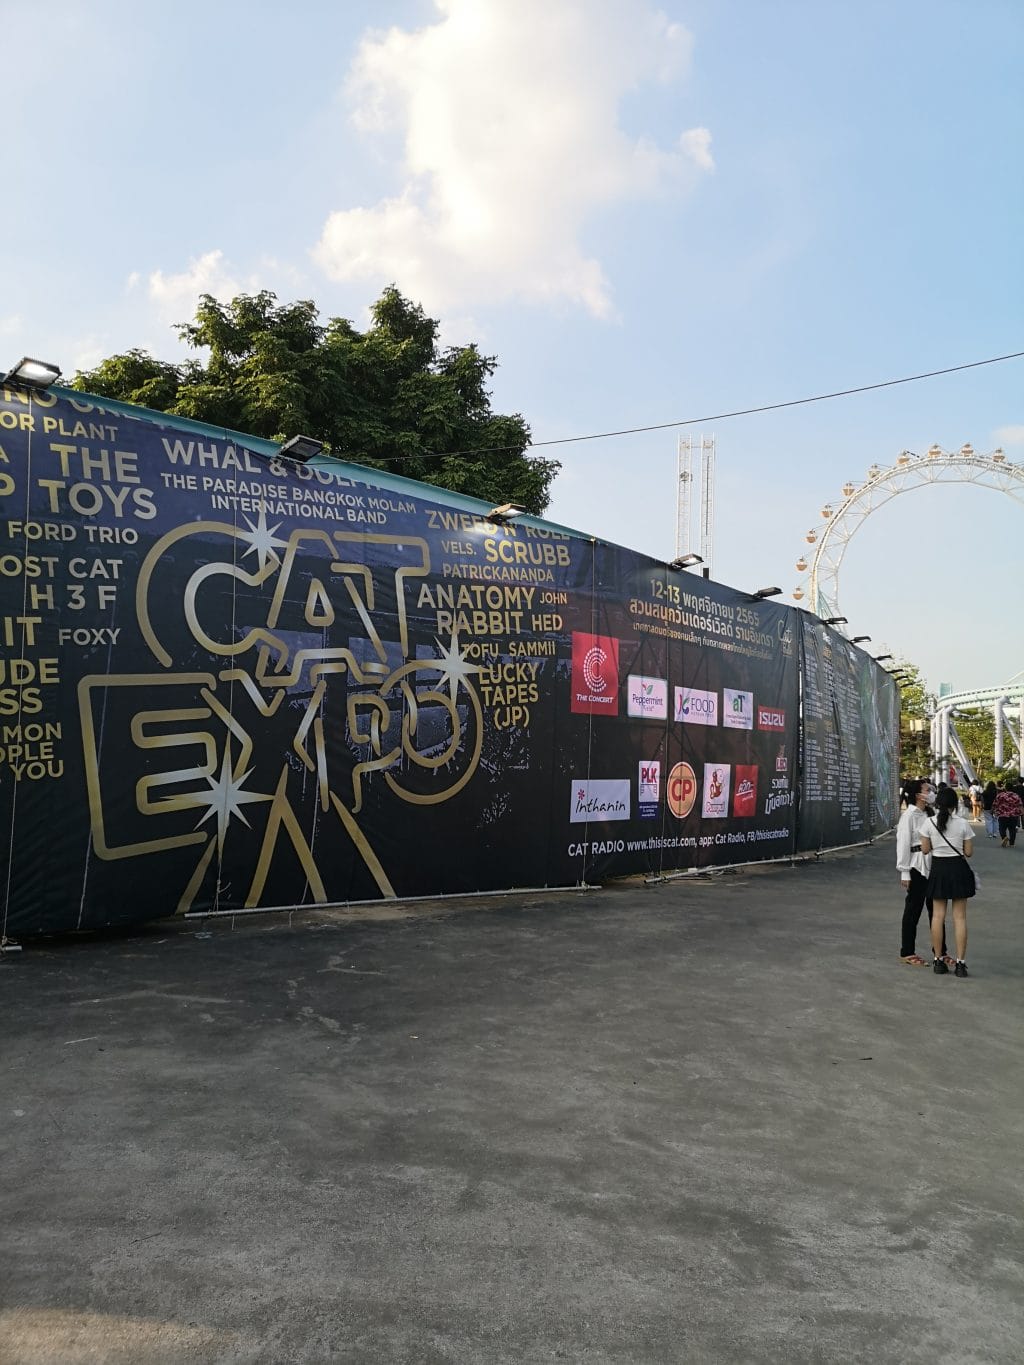 CAT EXPO：エッセイスト柳沢小実さんのタイ旅行記